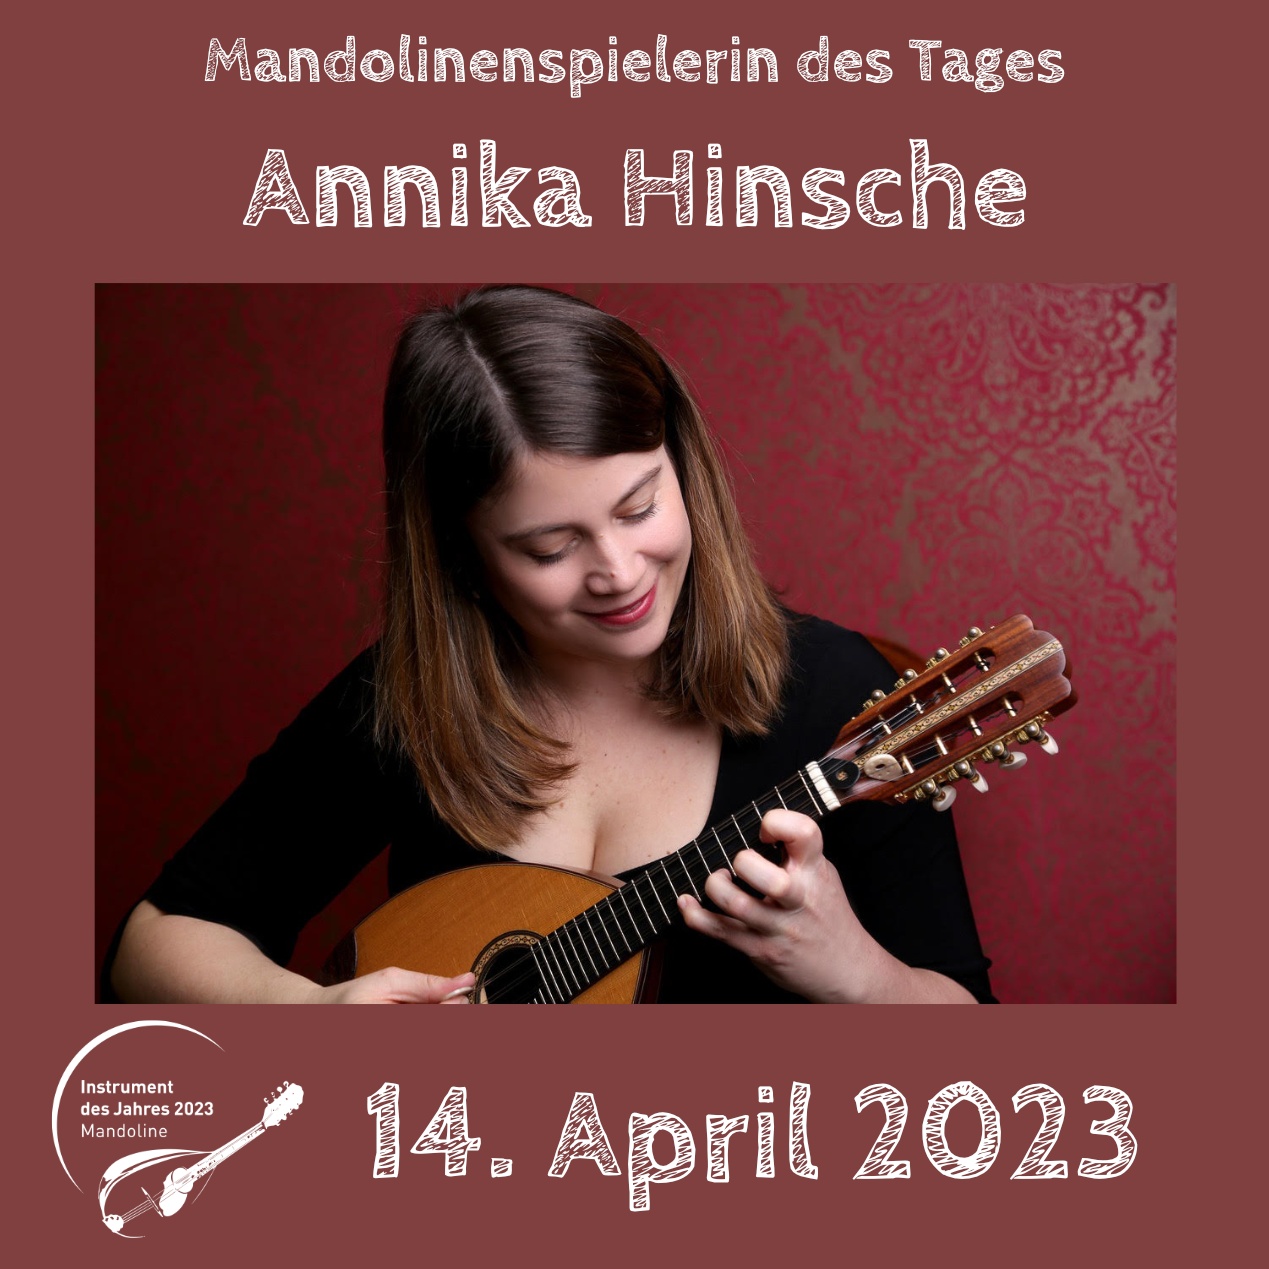 Annika Hinsche Instrument des Jahres 2023 Mandolinenspieler Mandolinenspielerin des Tages